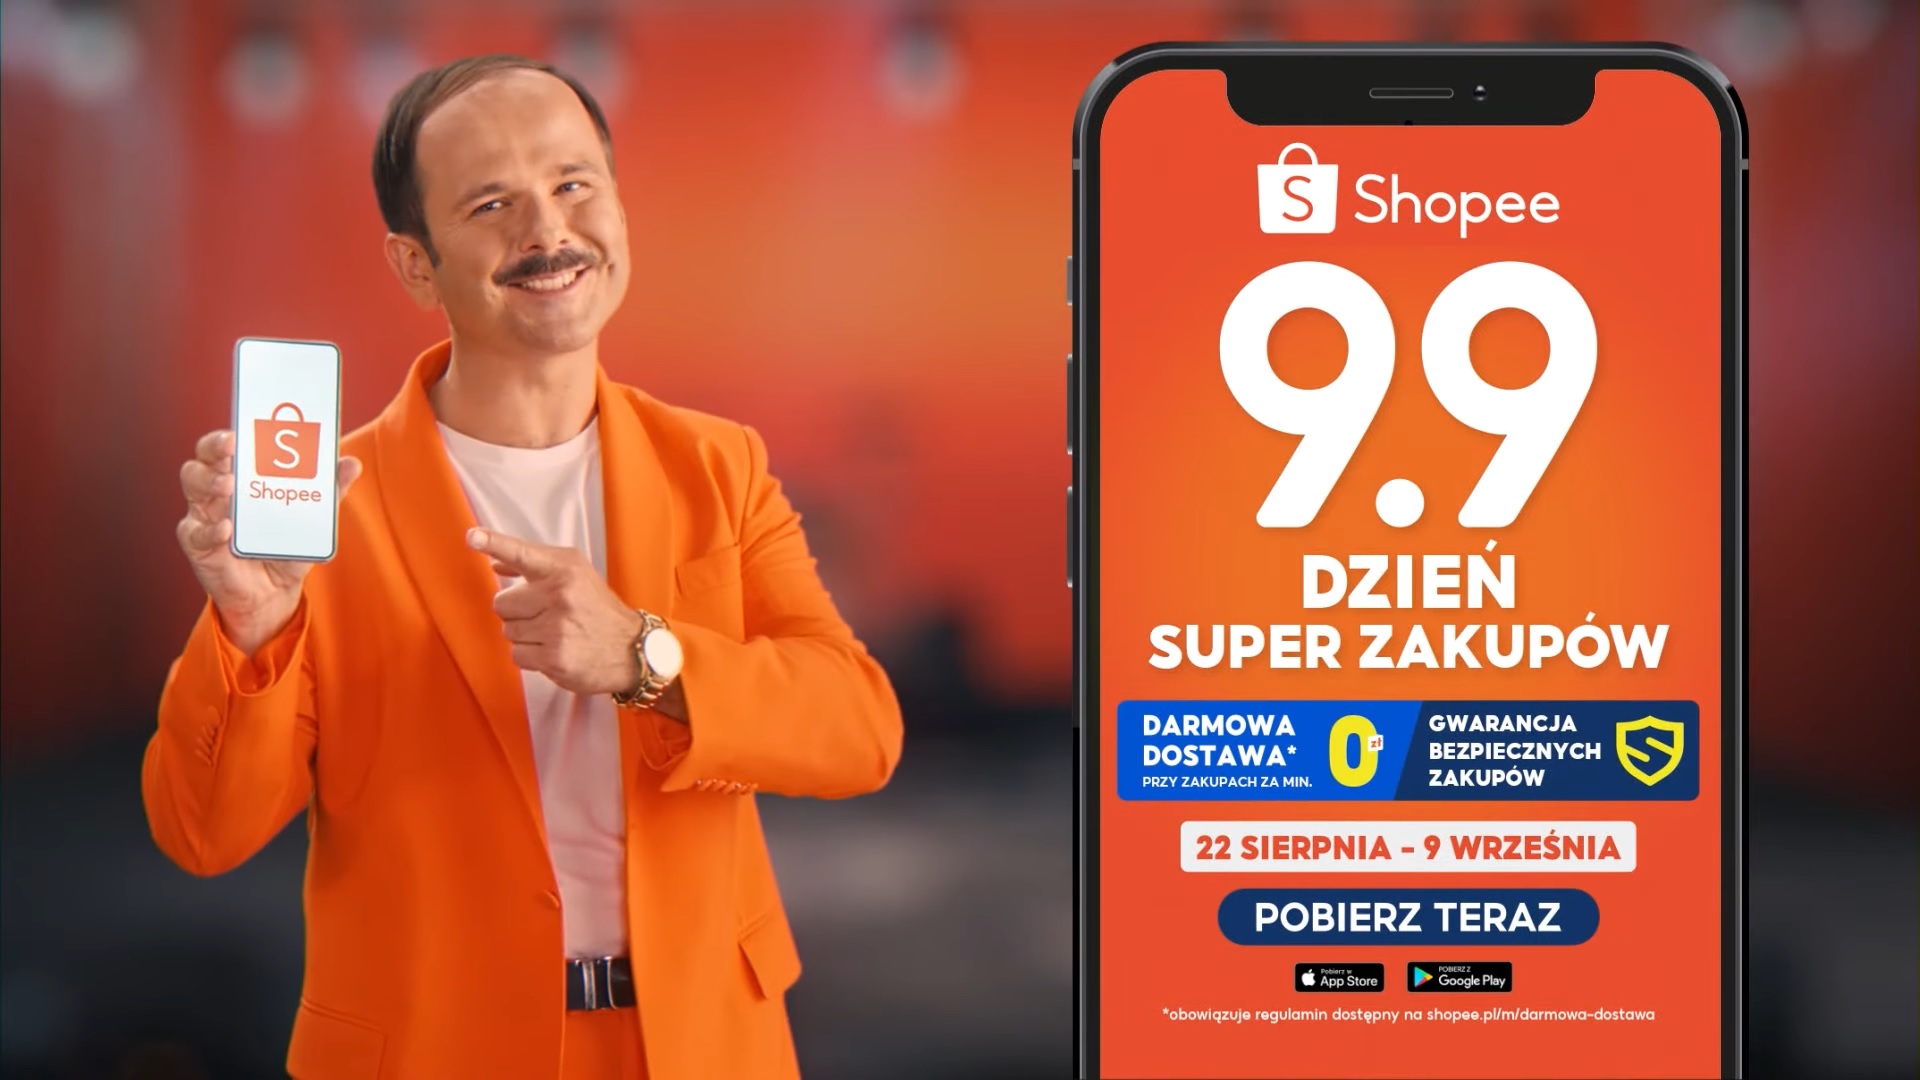 reklama Shopee Sławomir 9.9 dzień super zakupów